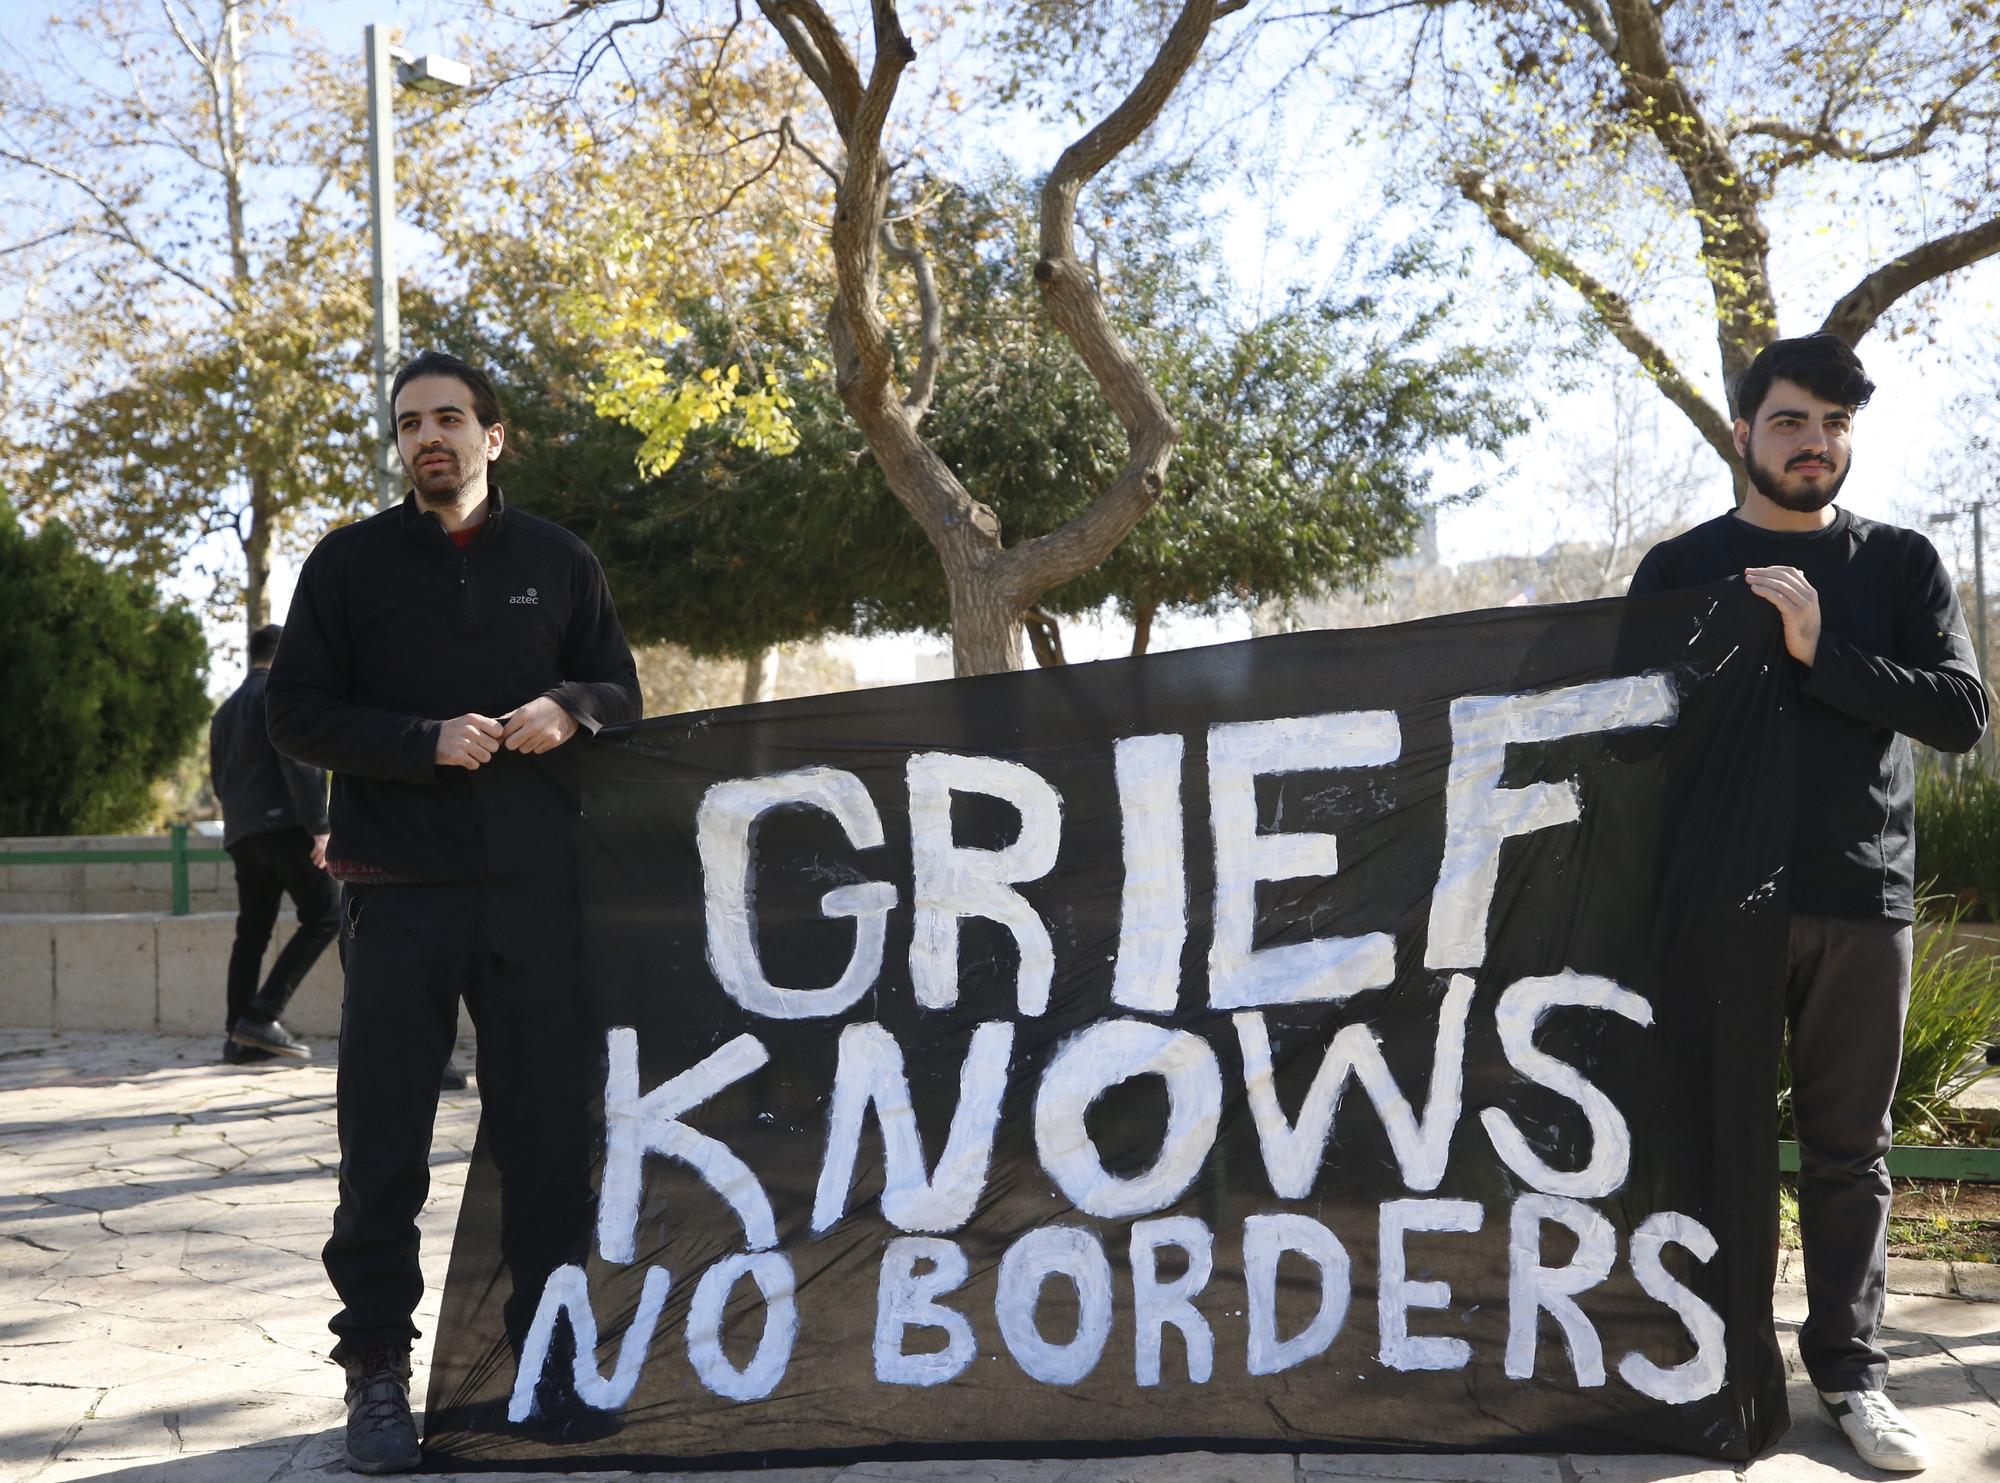 Des militants de gauche israéliens affichent une banderole disant "Le deuil ne connaît pas de frontière" devant l'ambassade américaine à Jérusalem. [AFP - Saeed Qaq]